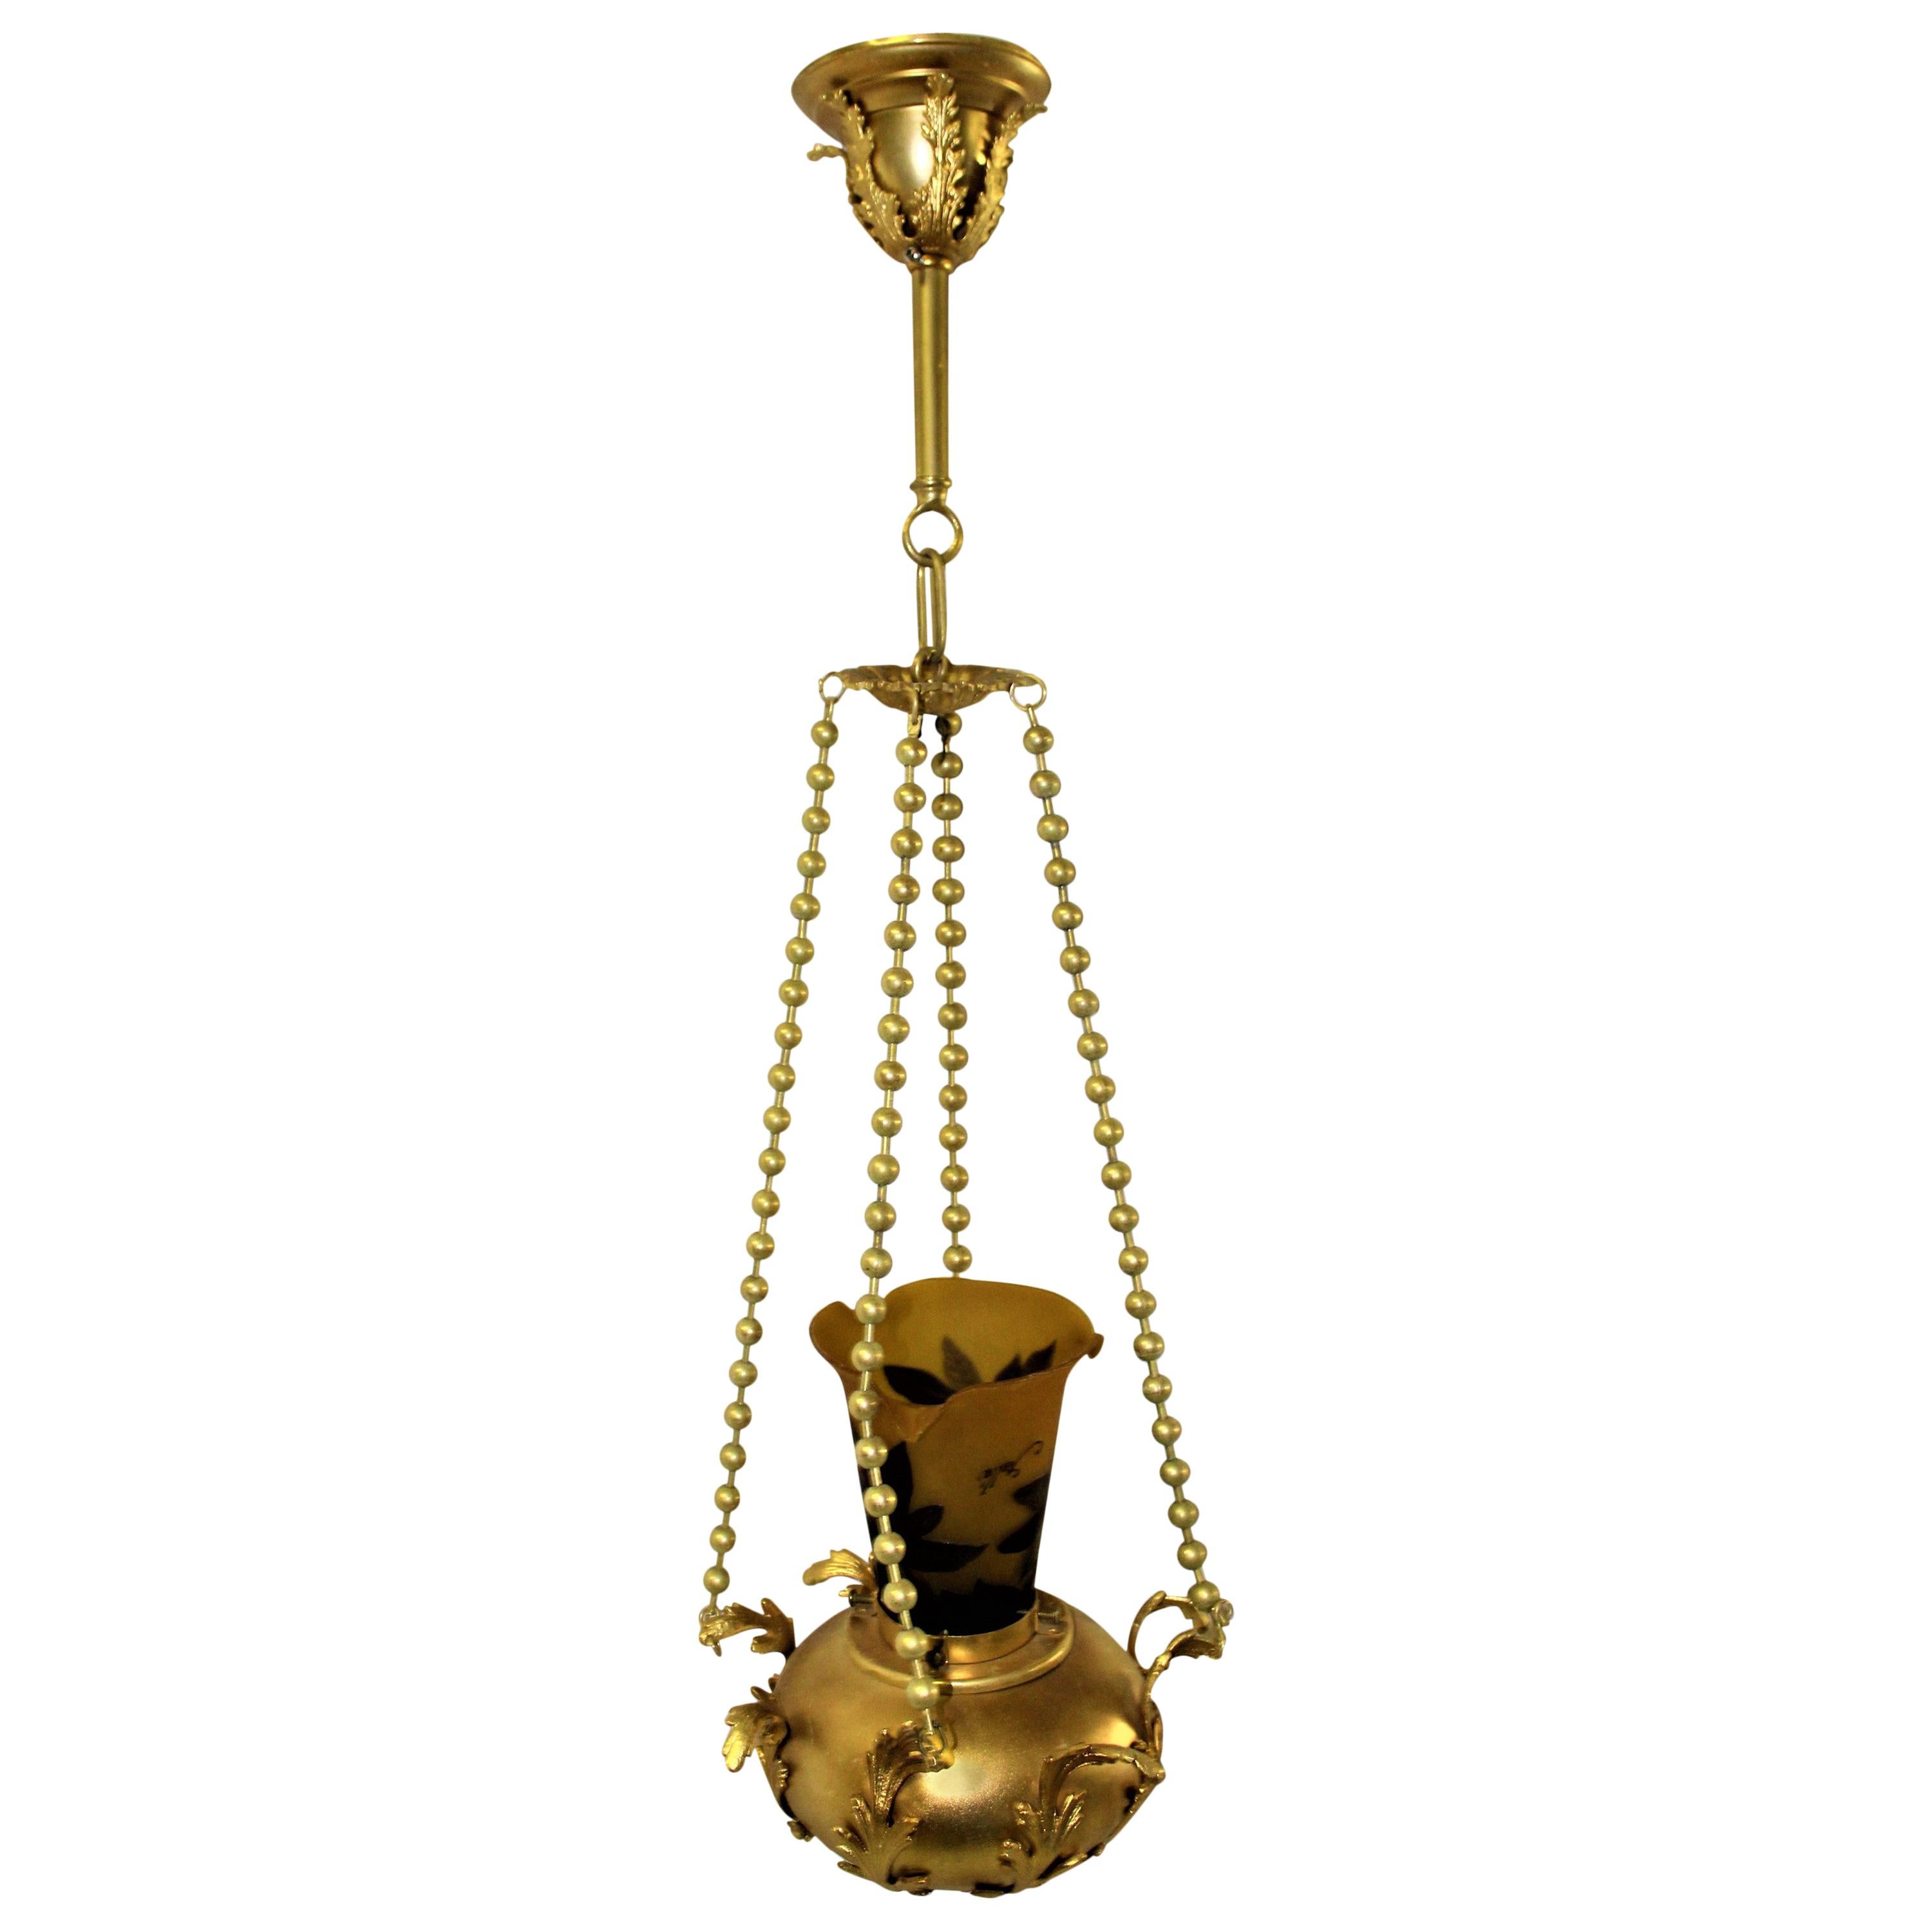 Lampe à suspension Art Nouveau, finition or 22 carats, abat-jour en verre de type galle